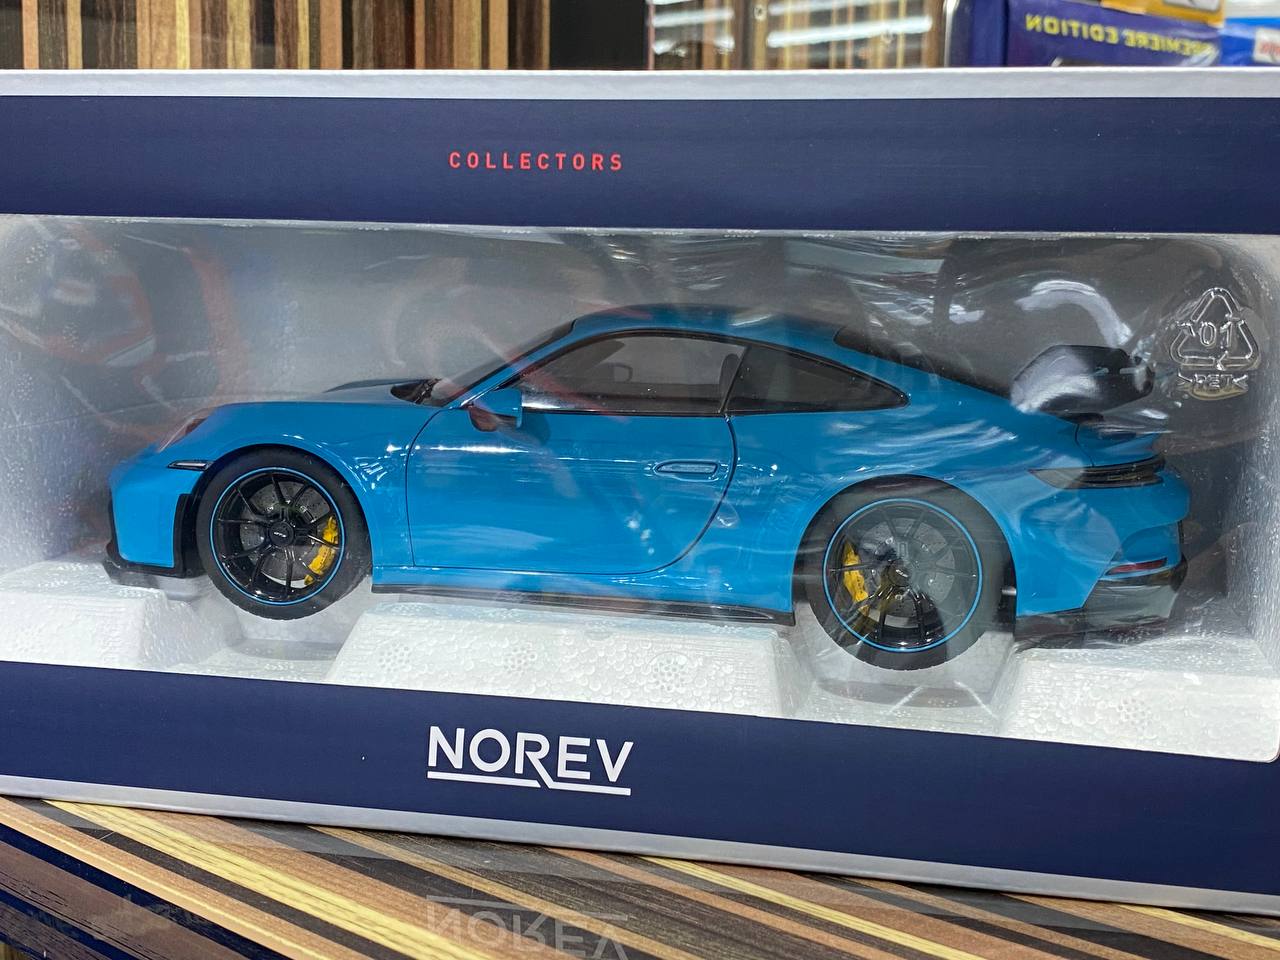 1/18 Diecast Porsche 911 GT3 BlueNorev Scale Model Car